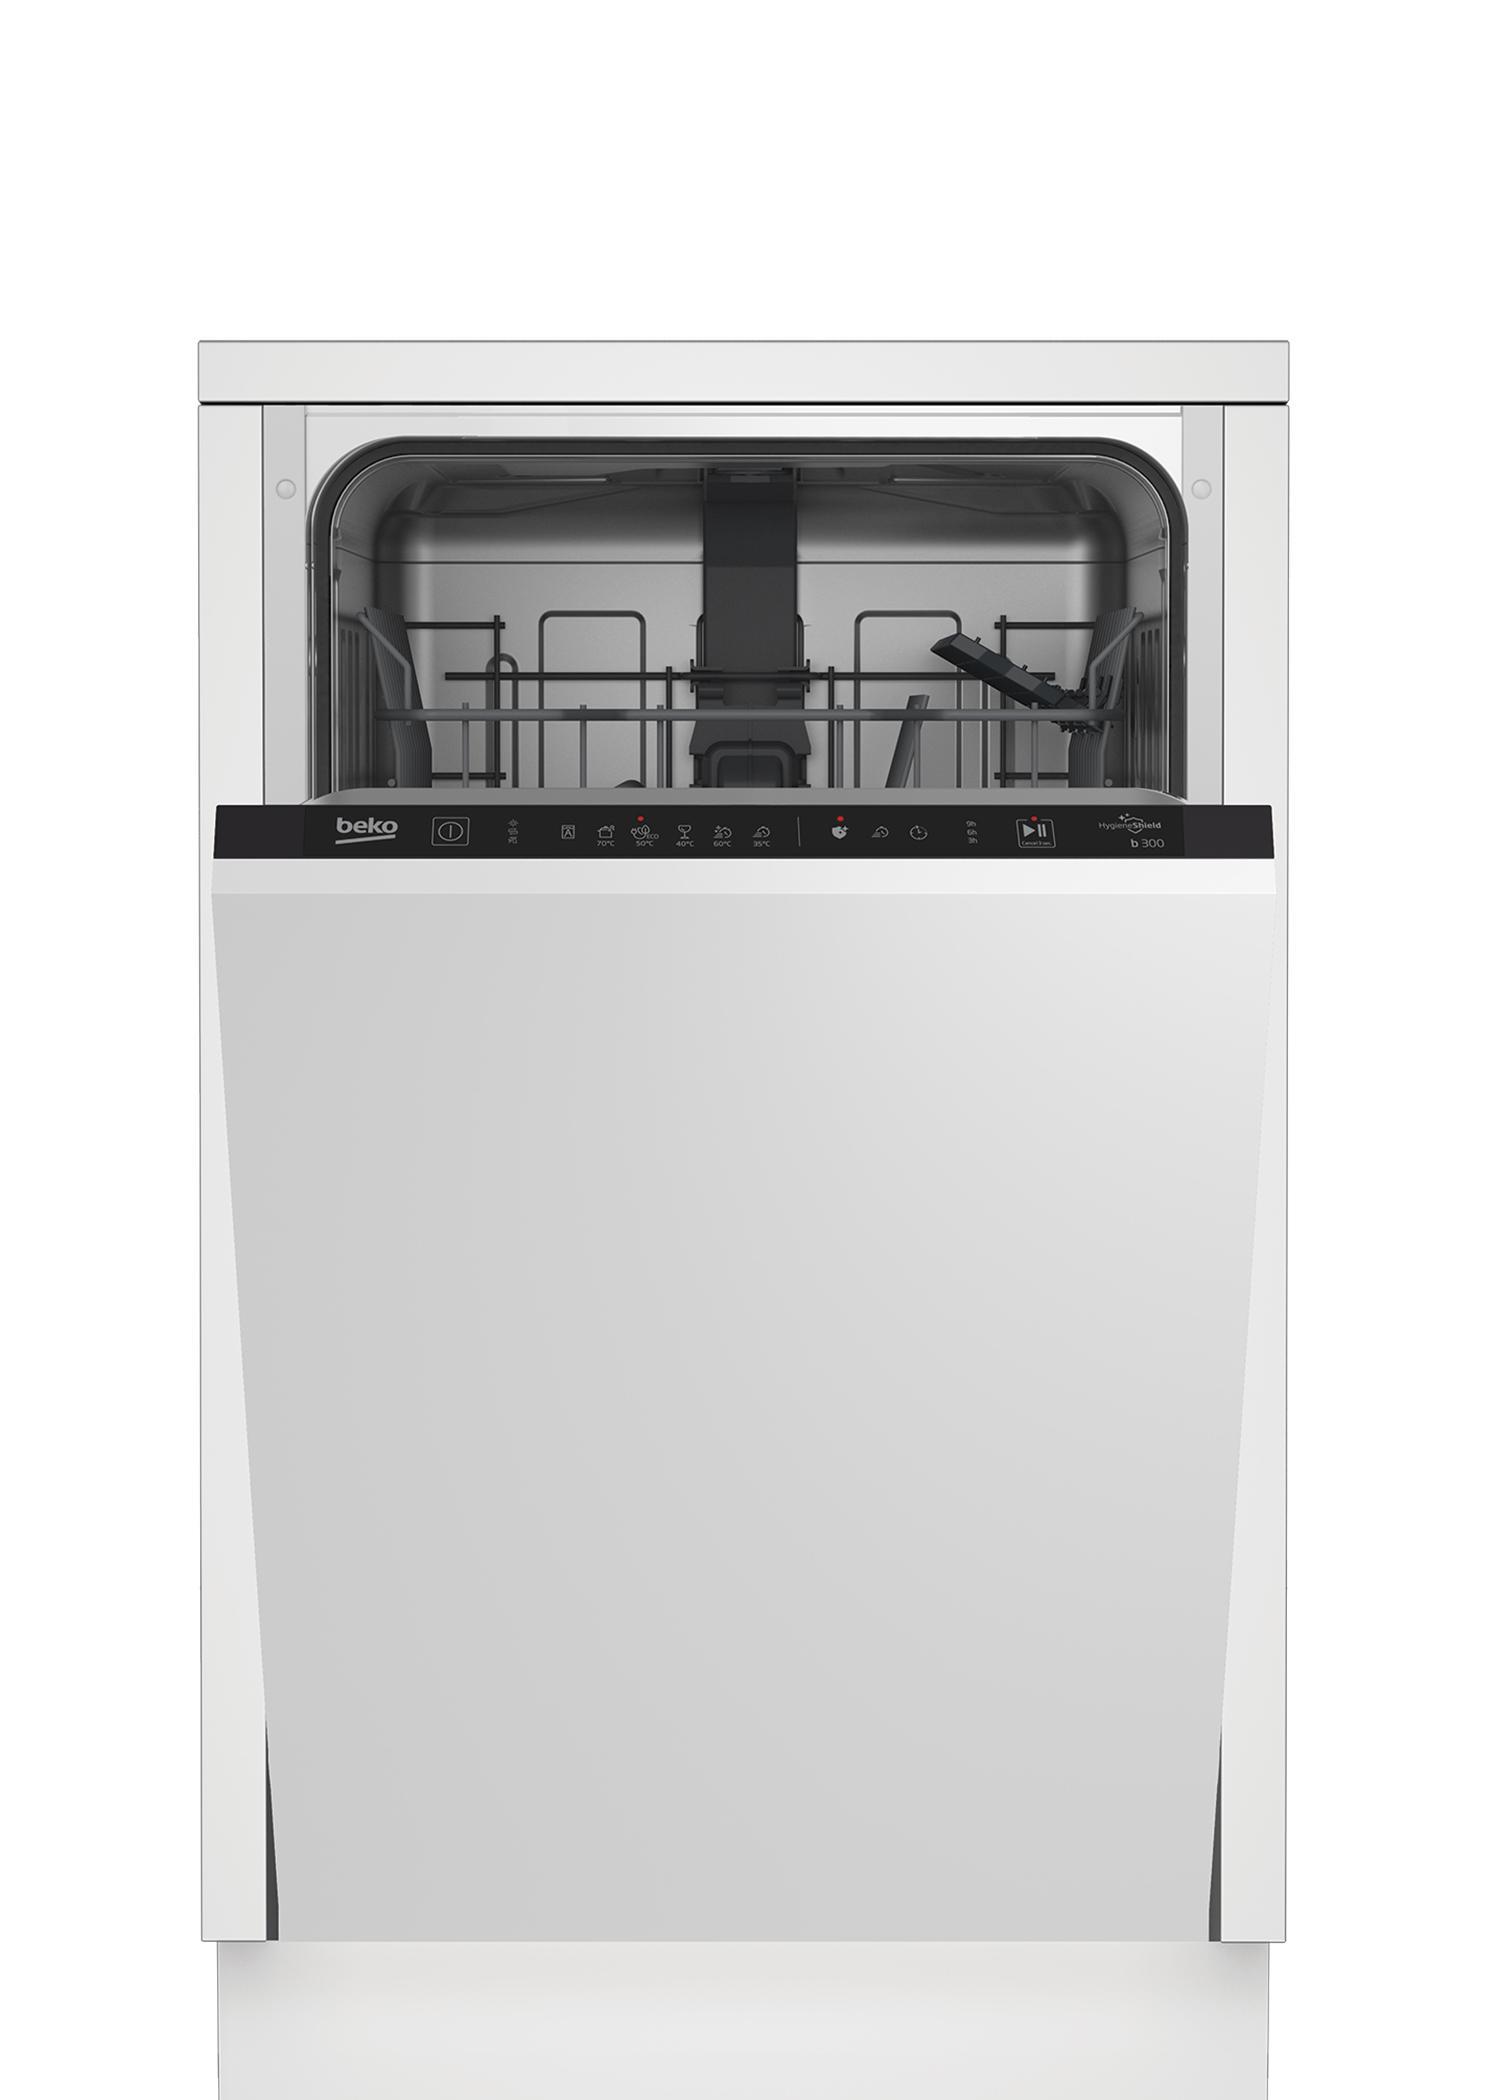 90470661 Встраиваемая посудомоечная машина BDIS16020 44.8 см 6 программ цвет белый STLM-0239744 BEKO